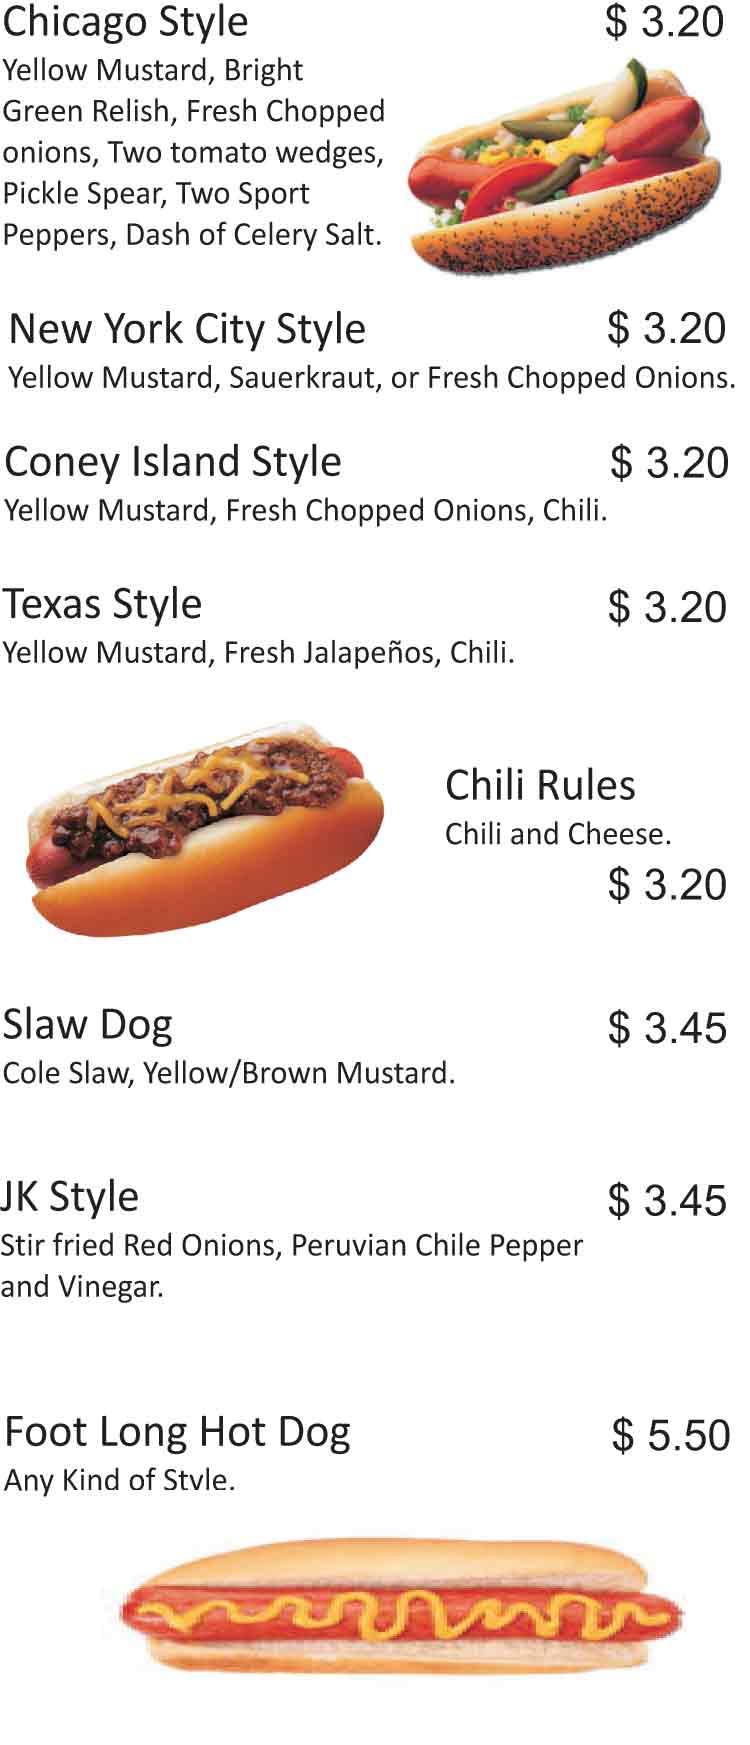 JK's Chicago Hot Dogs & Beef Sandwiches Restaurant Menu San Antonio